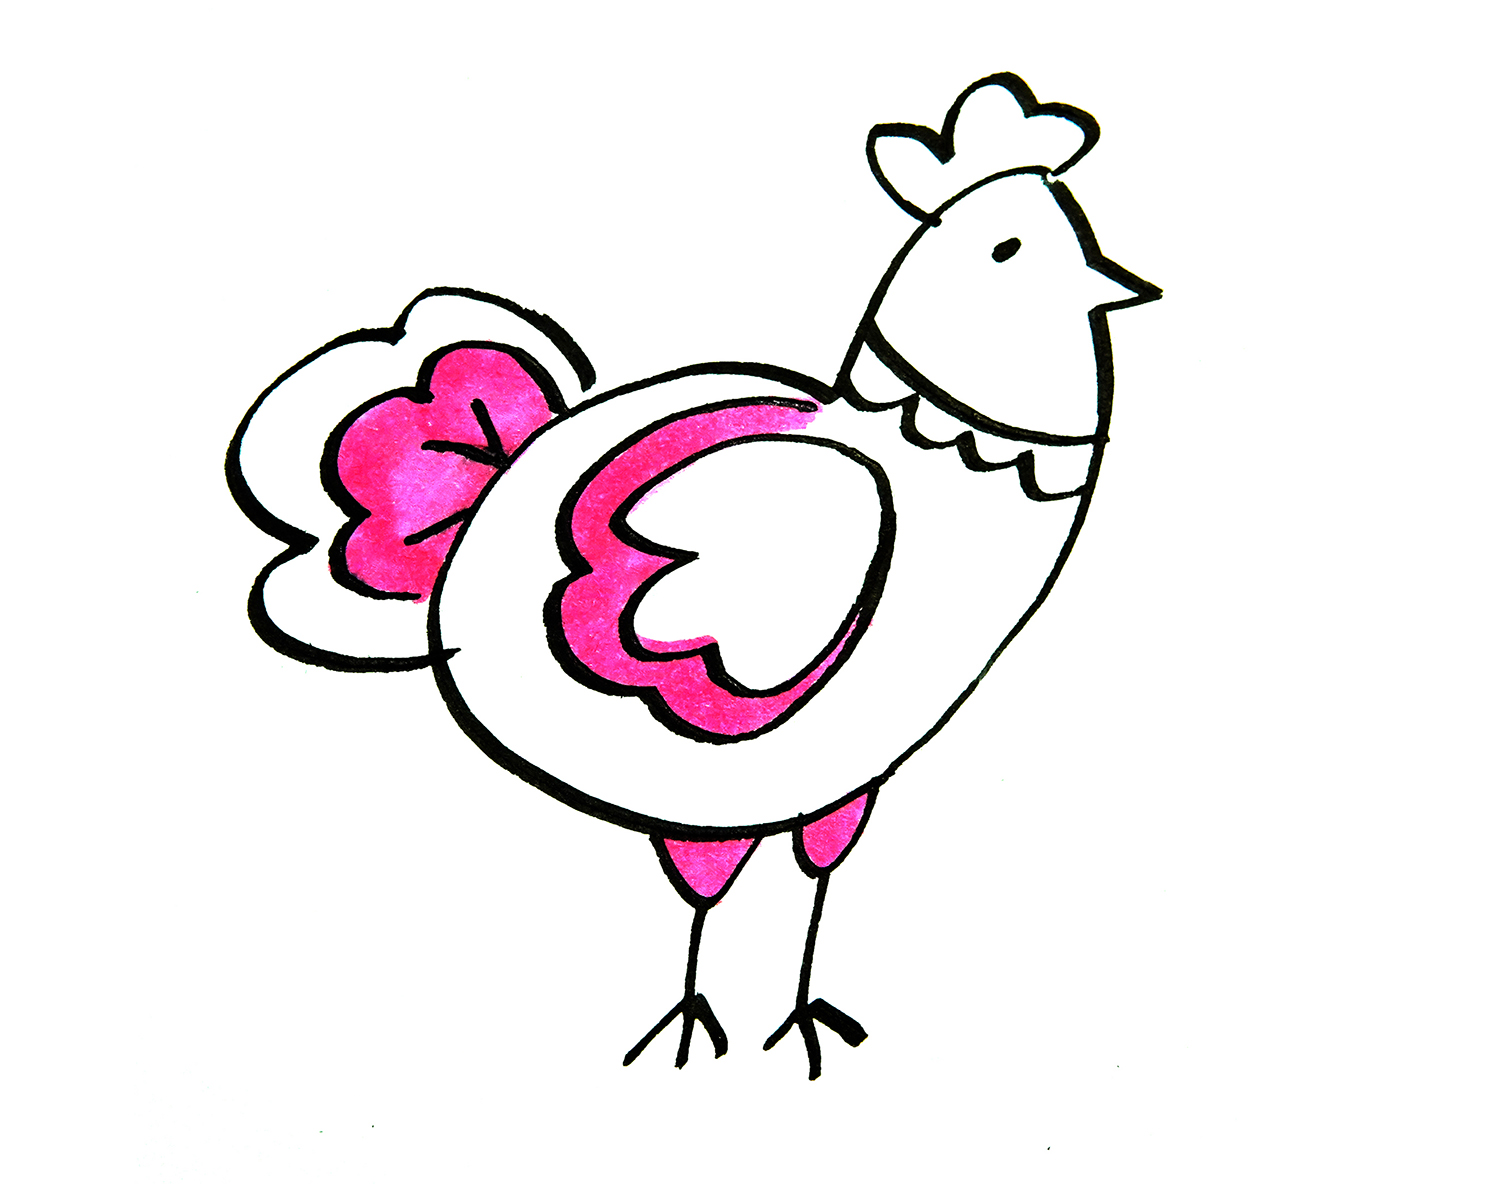 食物鸡简笔画彩色图片